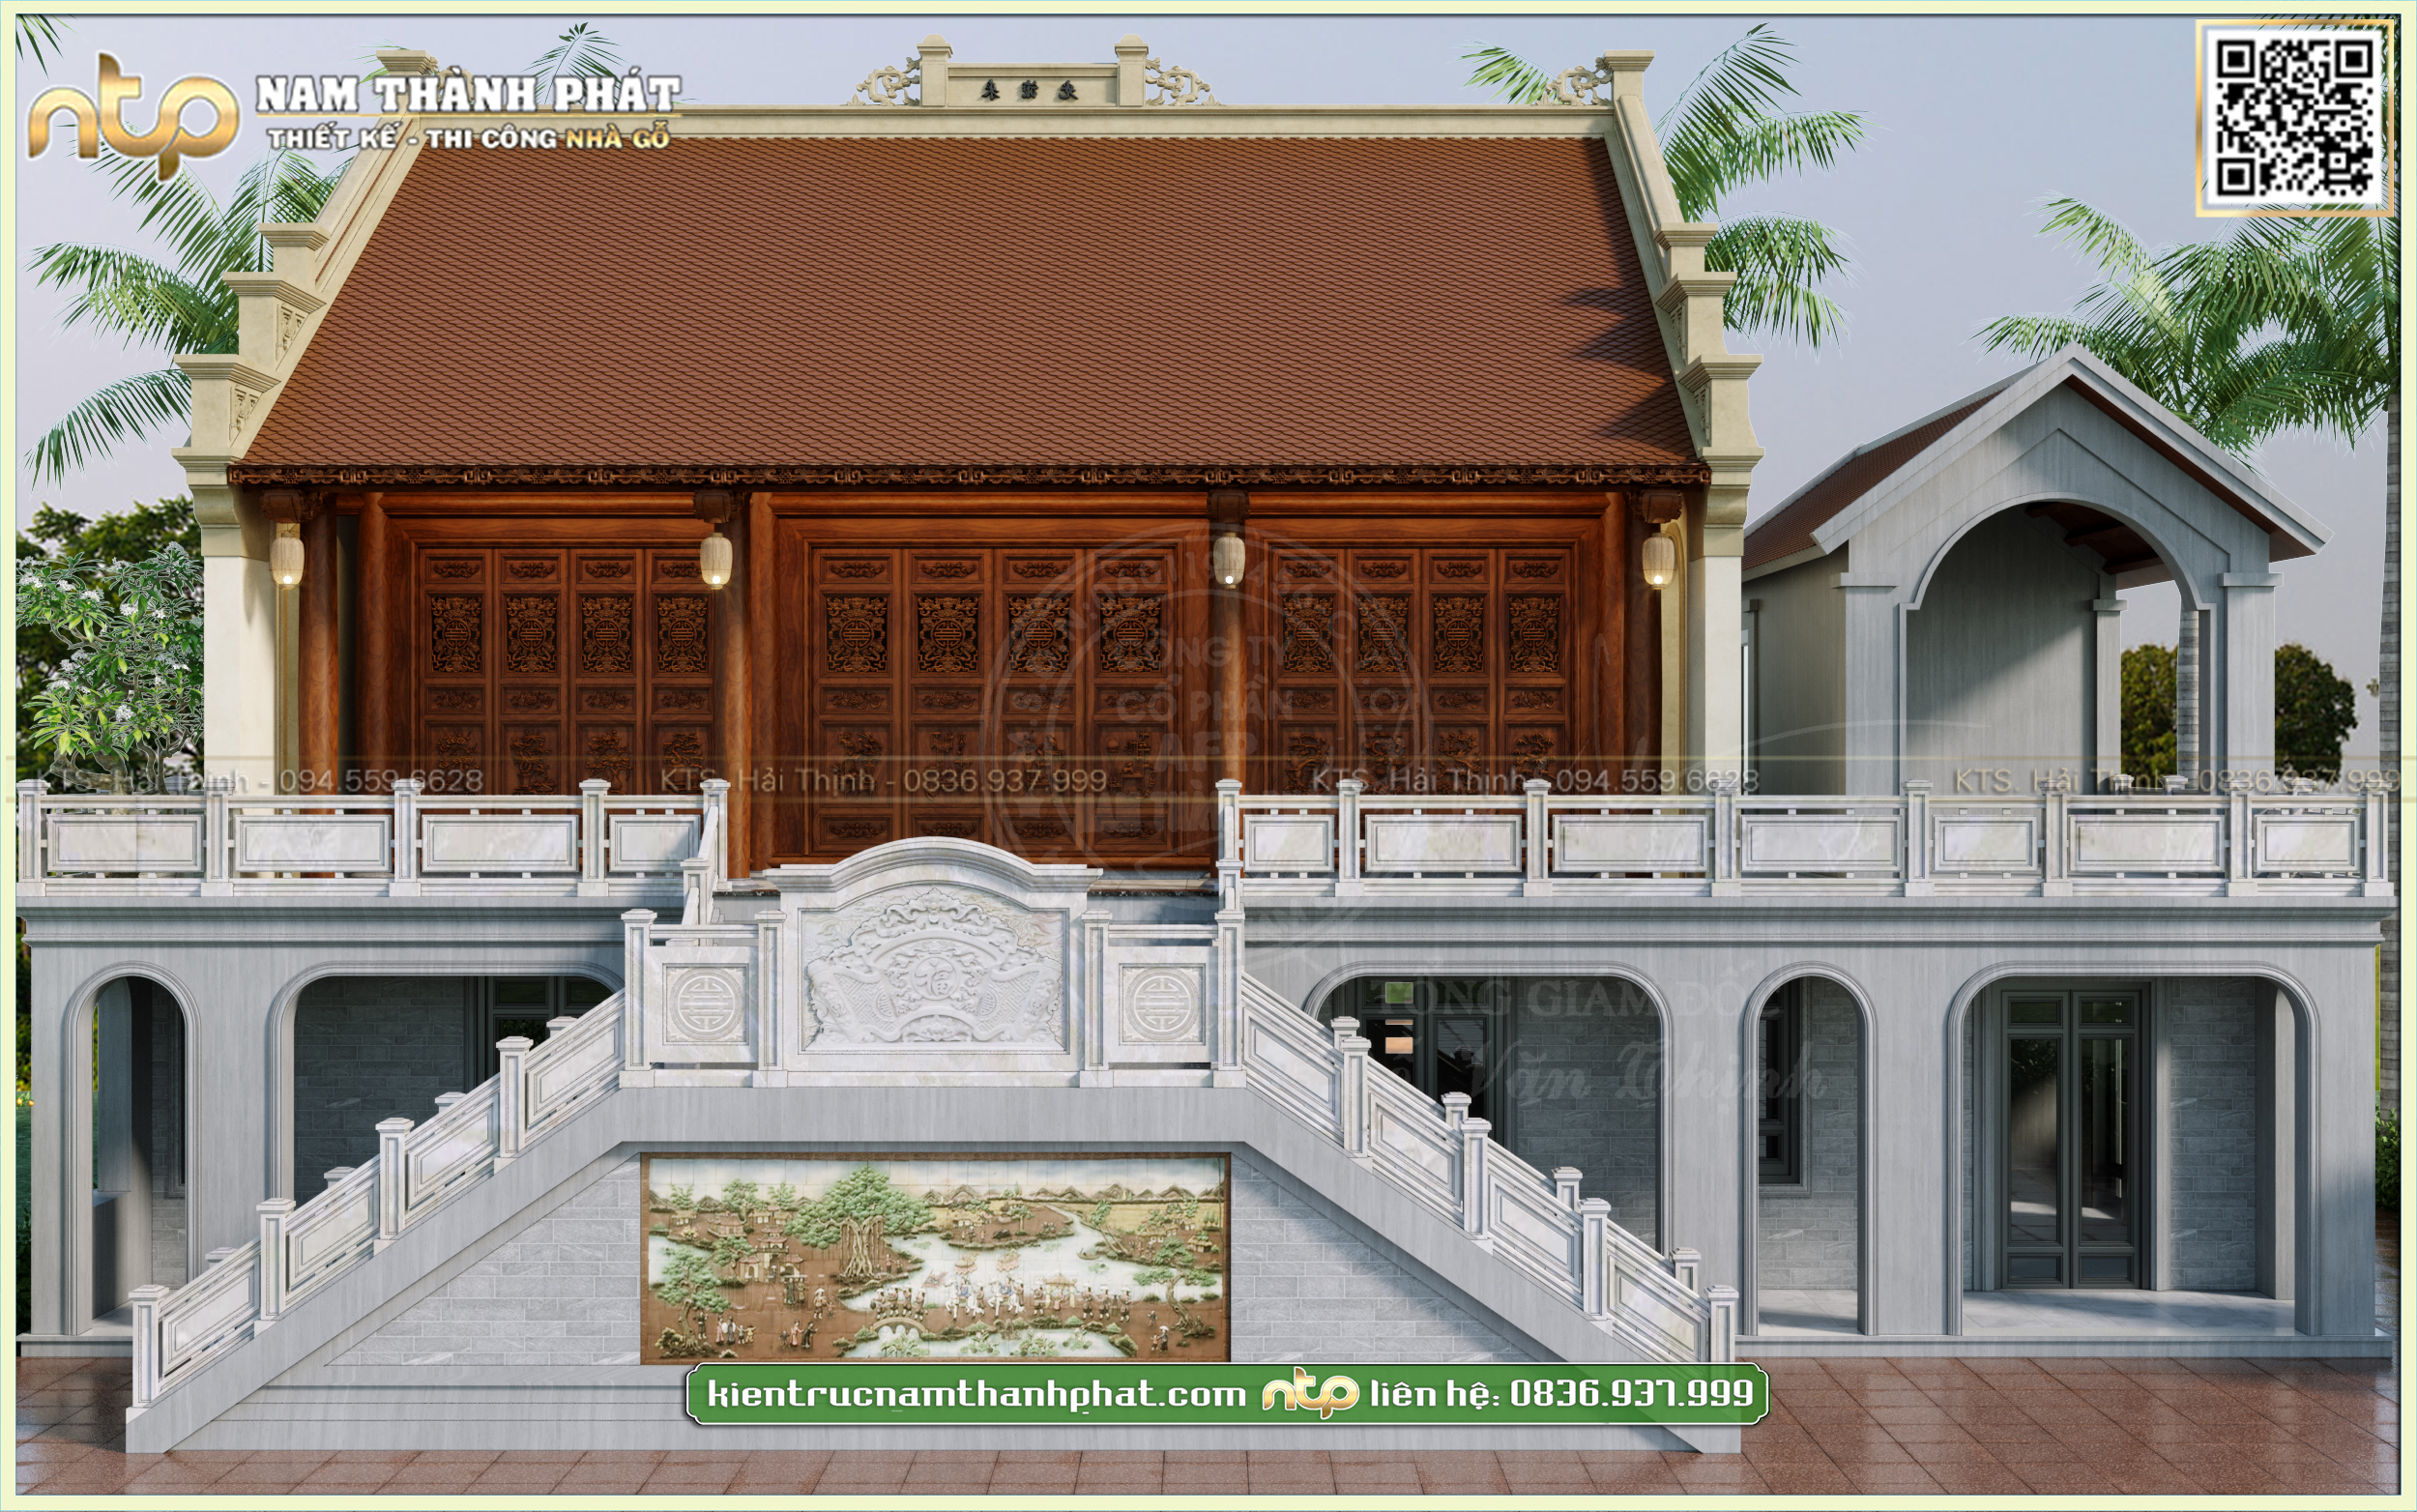 Ngôi nhà 2 tầng Thái Lan phong cách hiện đại với cổng vòm ban công bằng gỗ  bóng mờ